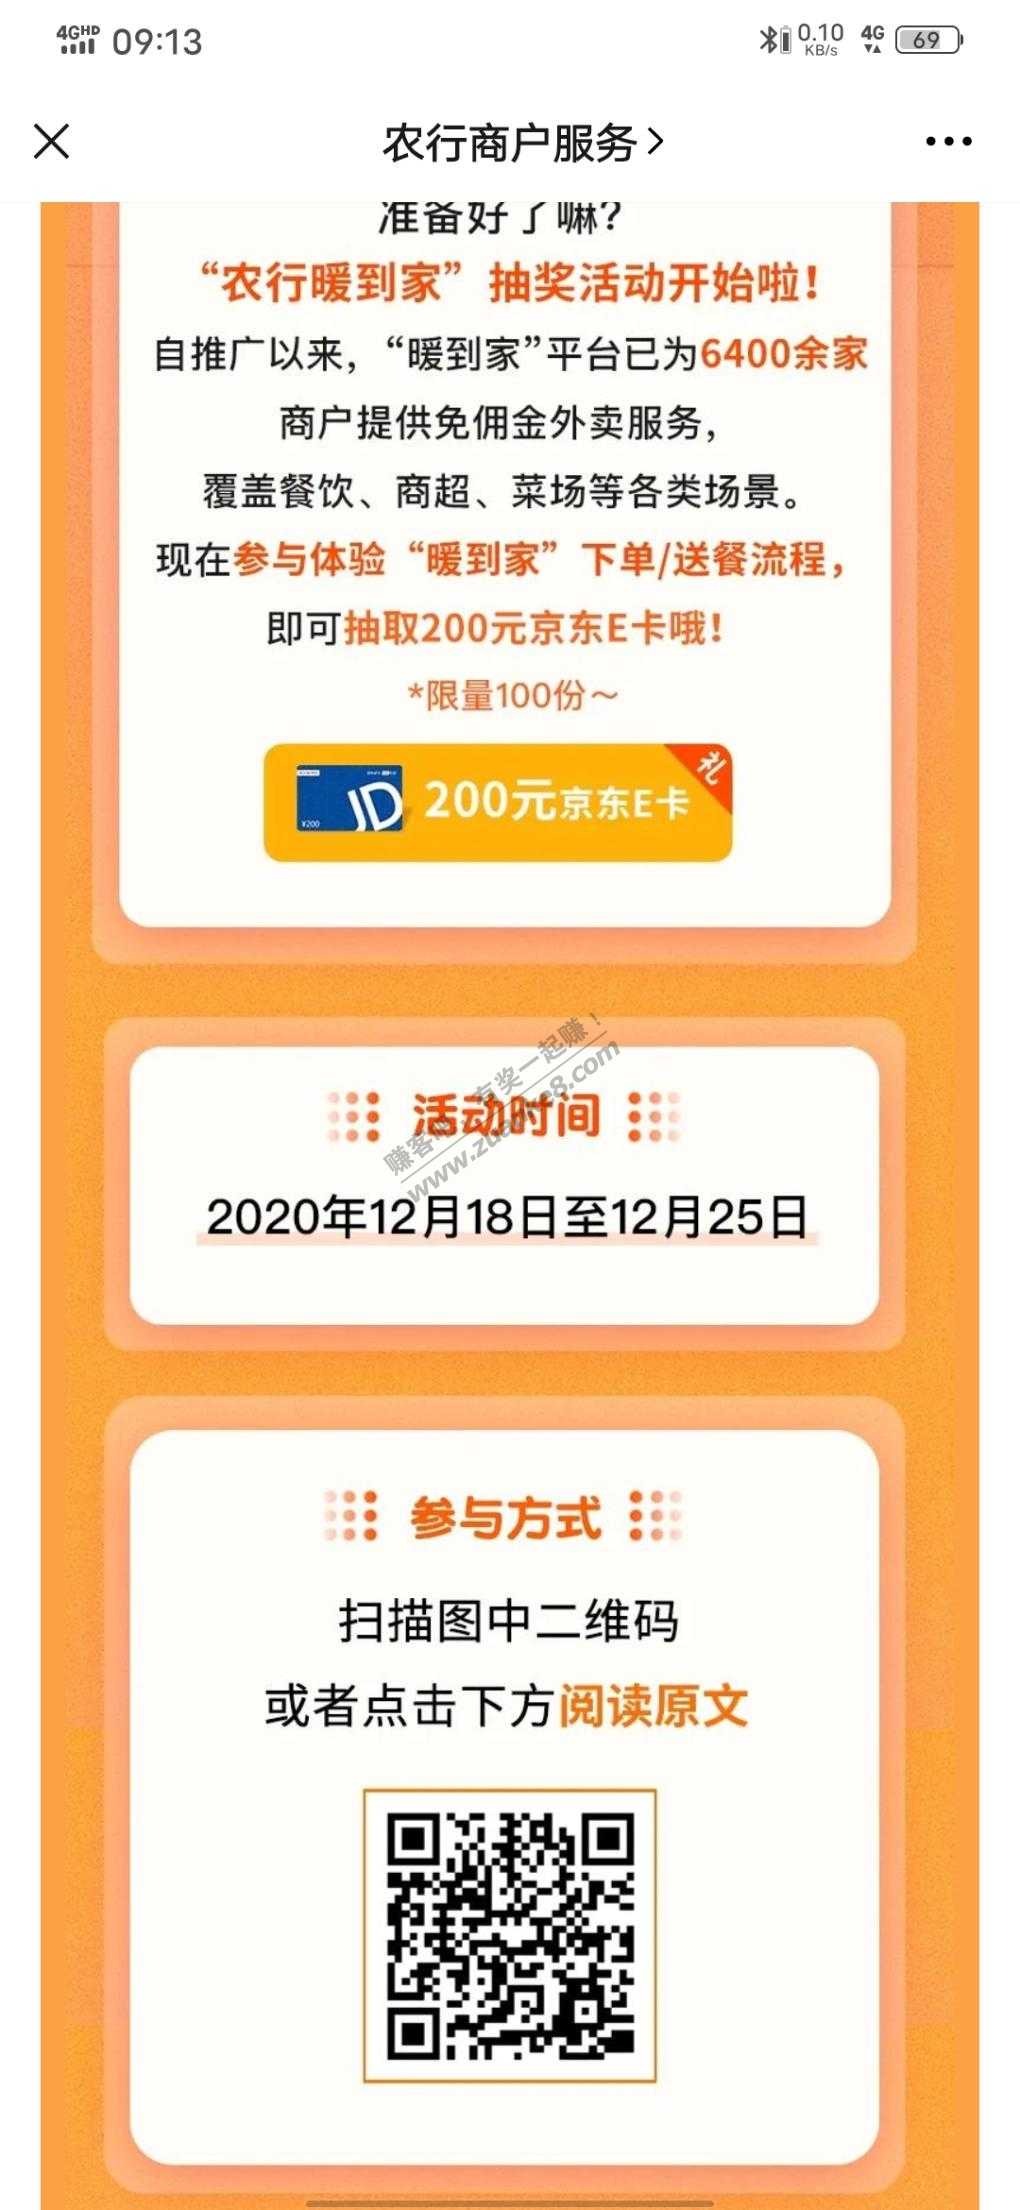 100份200e卡-惠小助(52huixz.com)